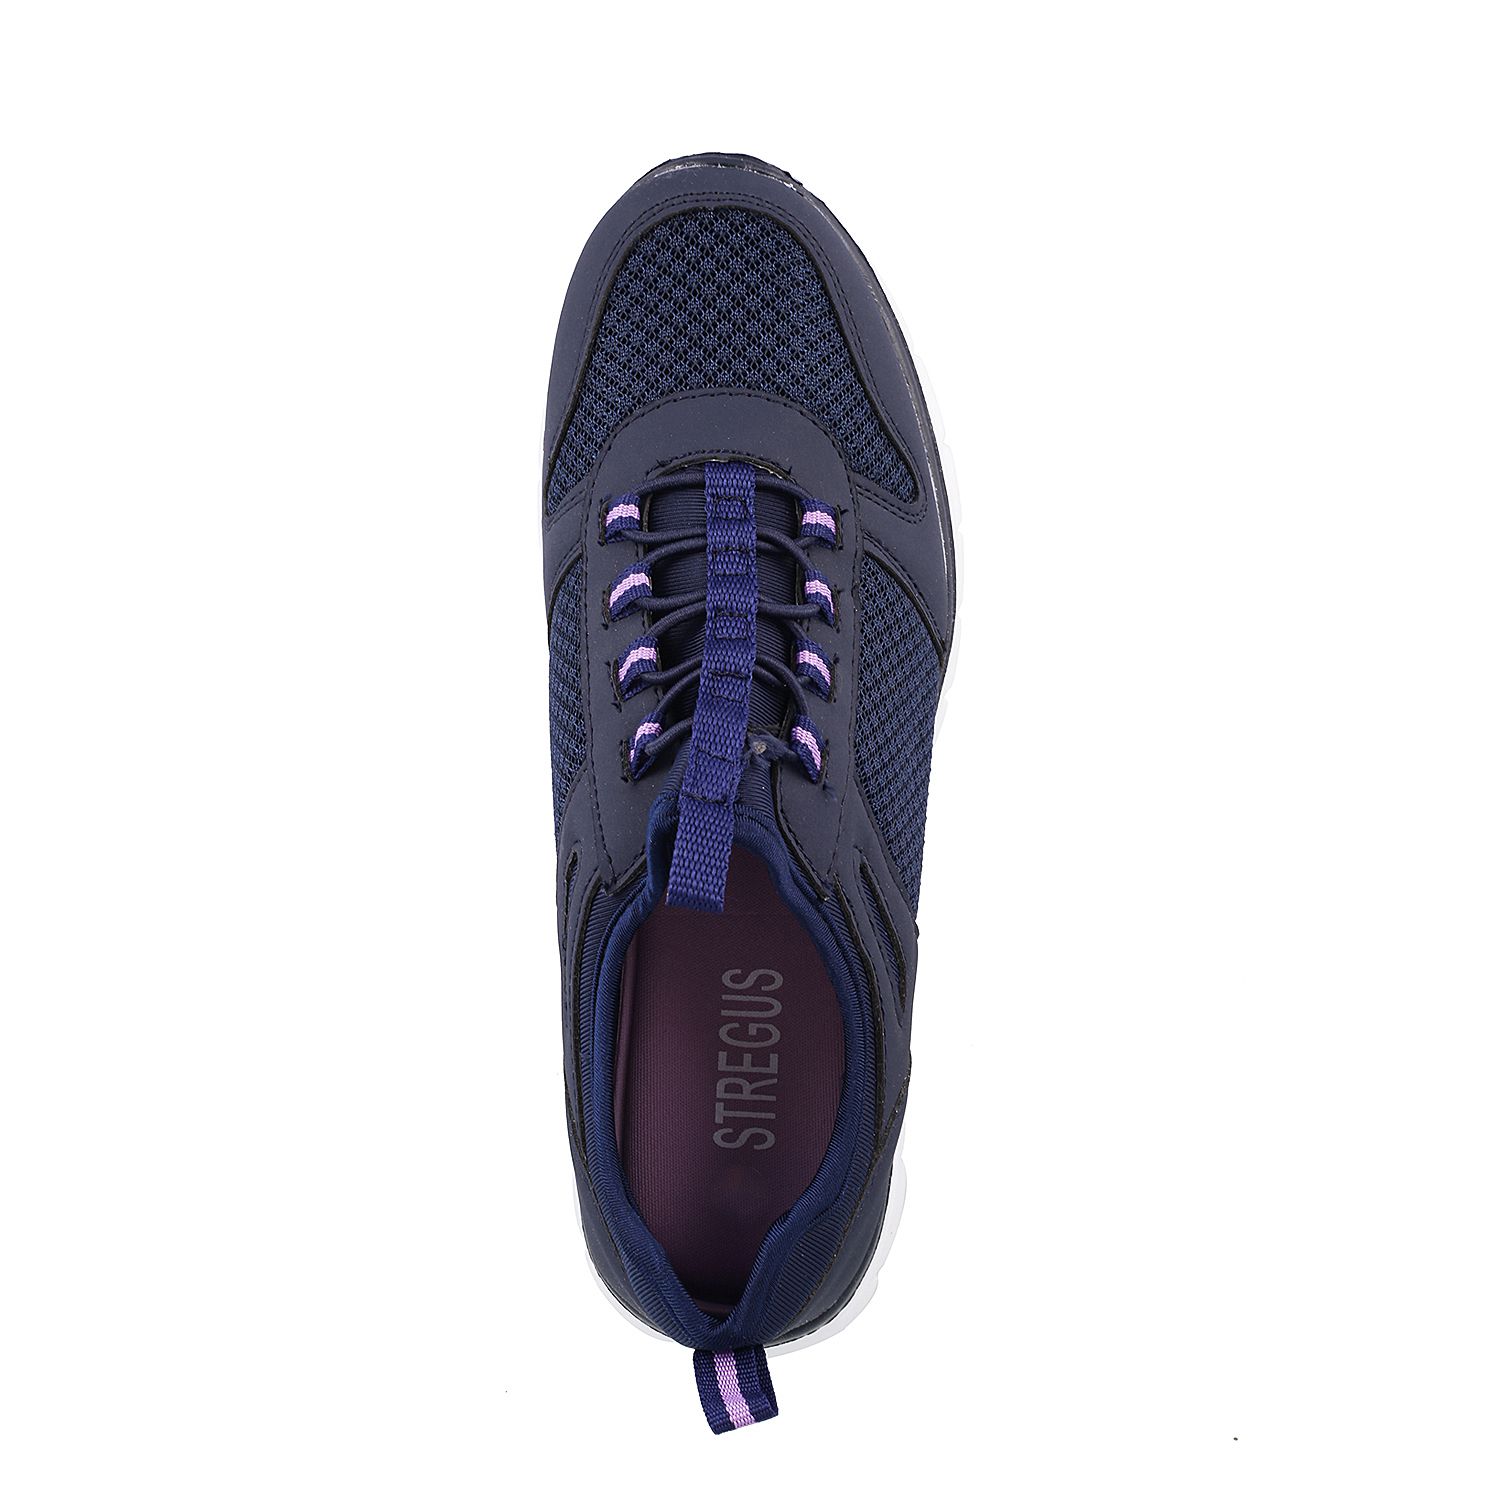 WALKWAY BLUE Walking Shoes Price in India- Buy WALKWAY BLUE Walking ...